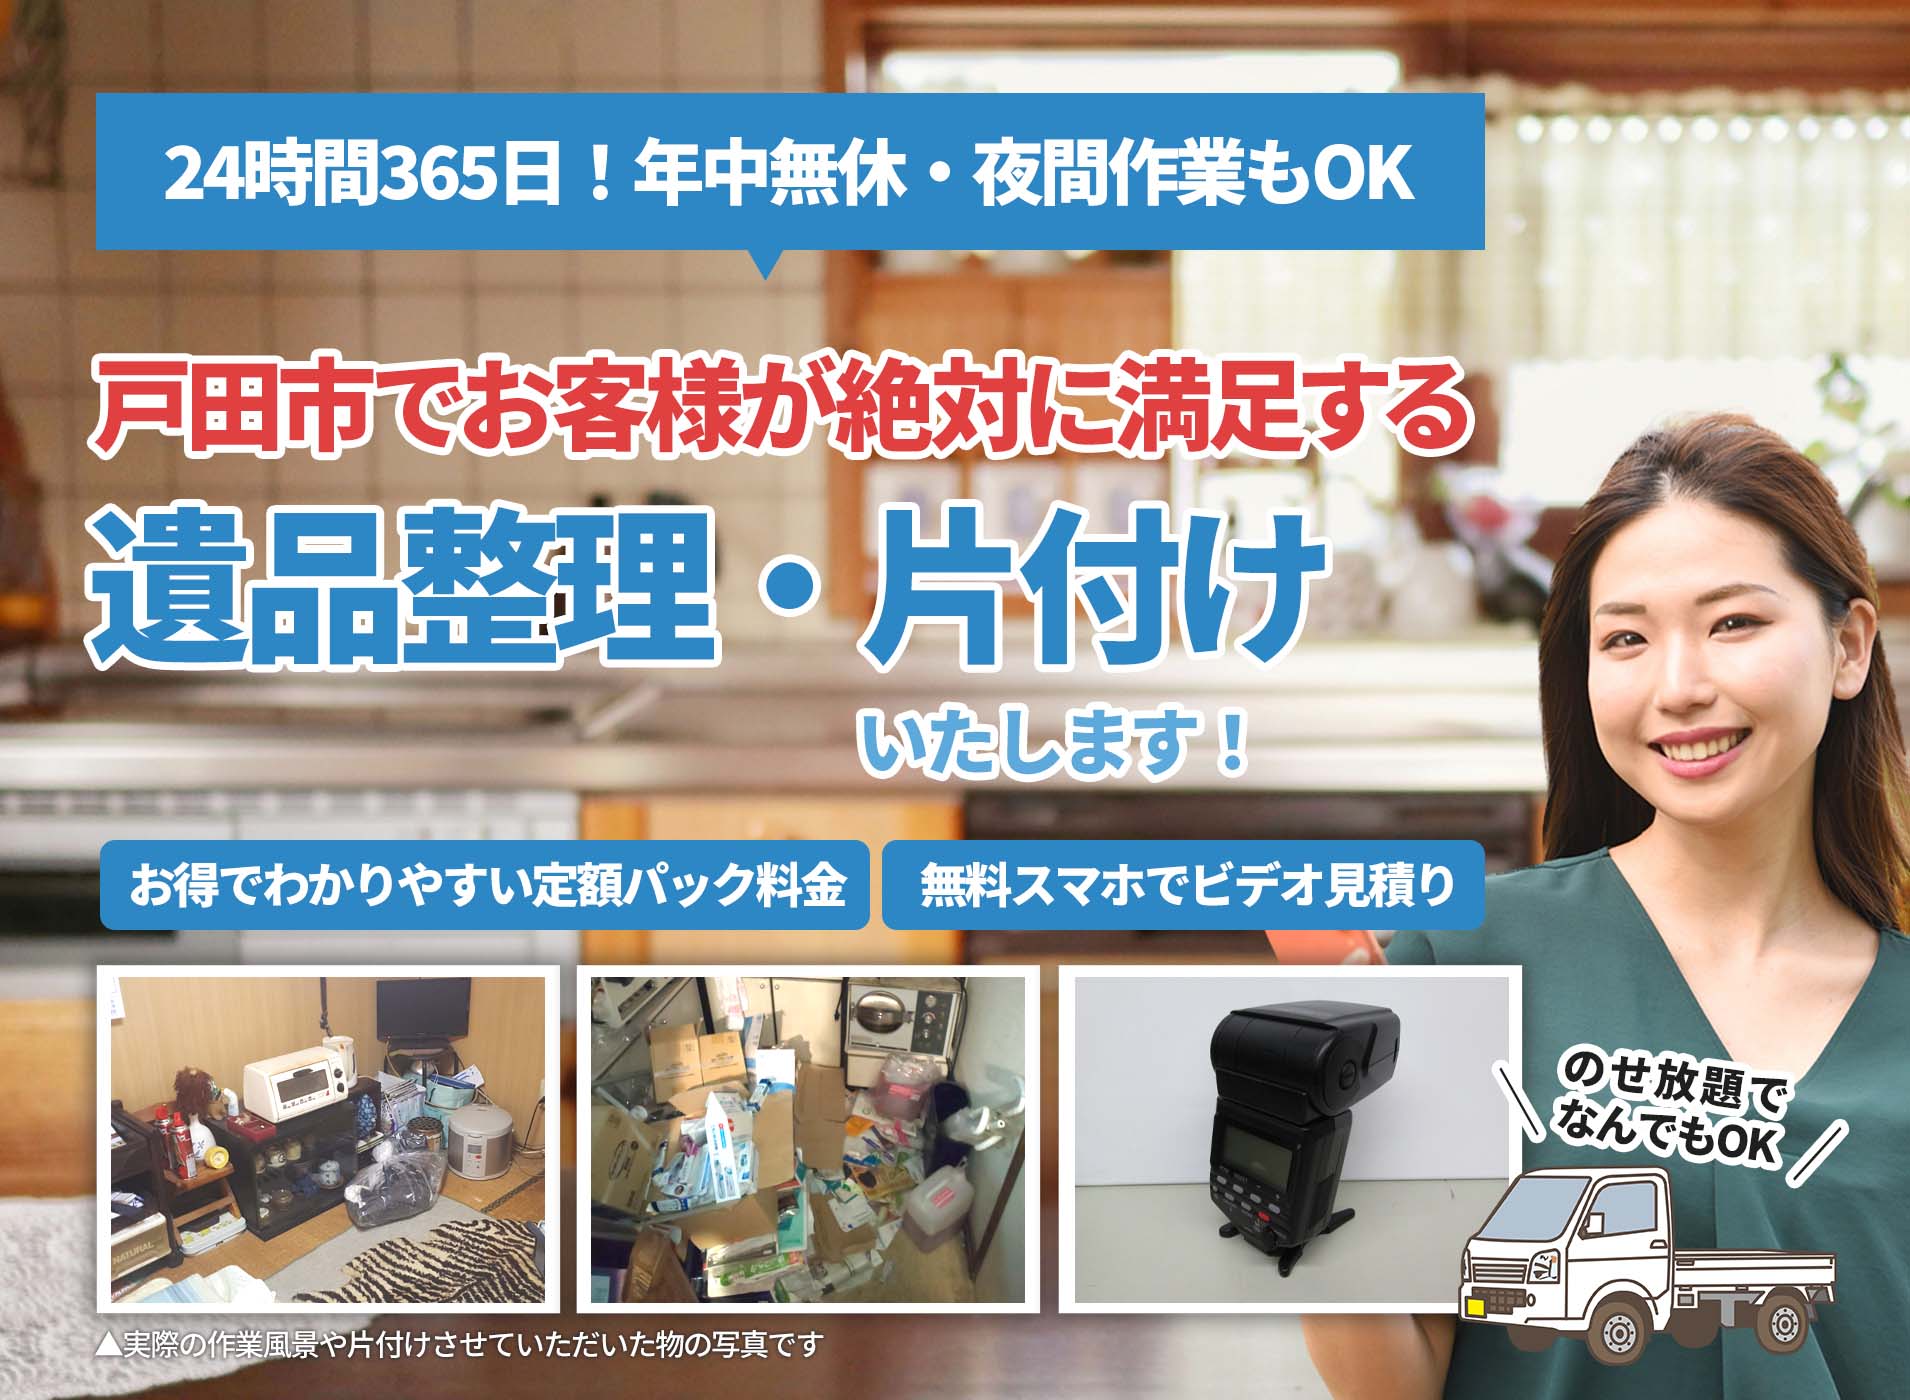 戸田市でお客様が絶対に満足するＬＴＪ遺品整理隊の遺品整理サービス